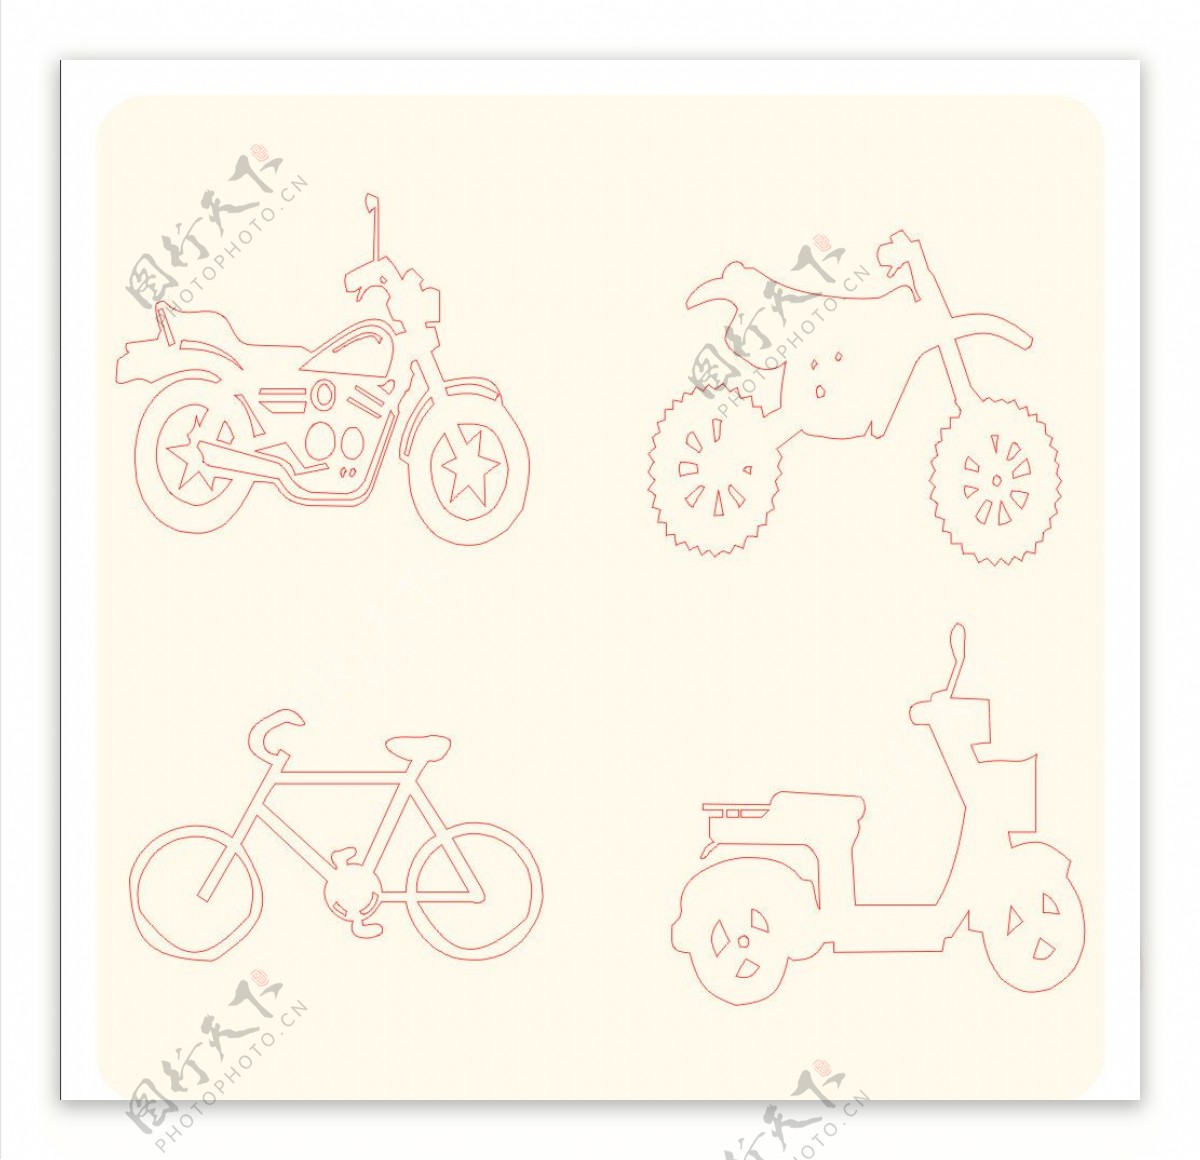 摩托车和单车